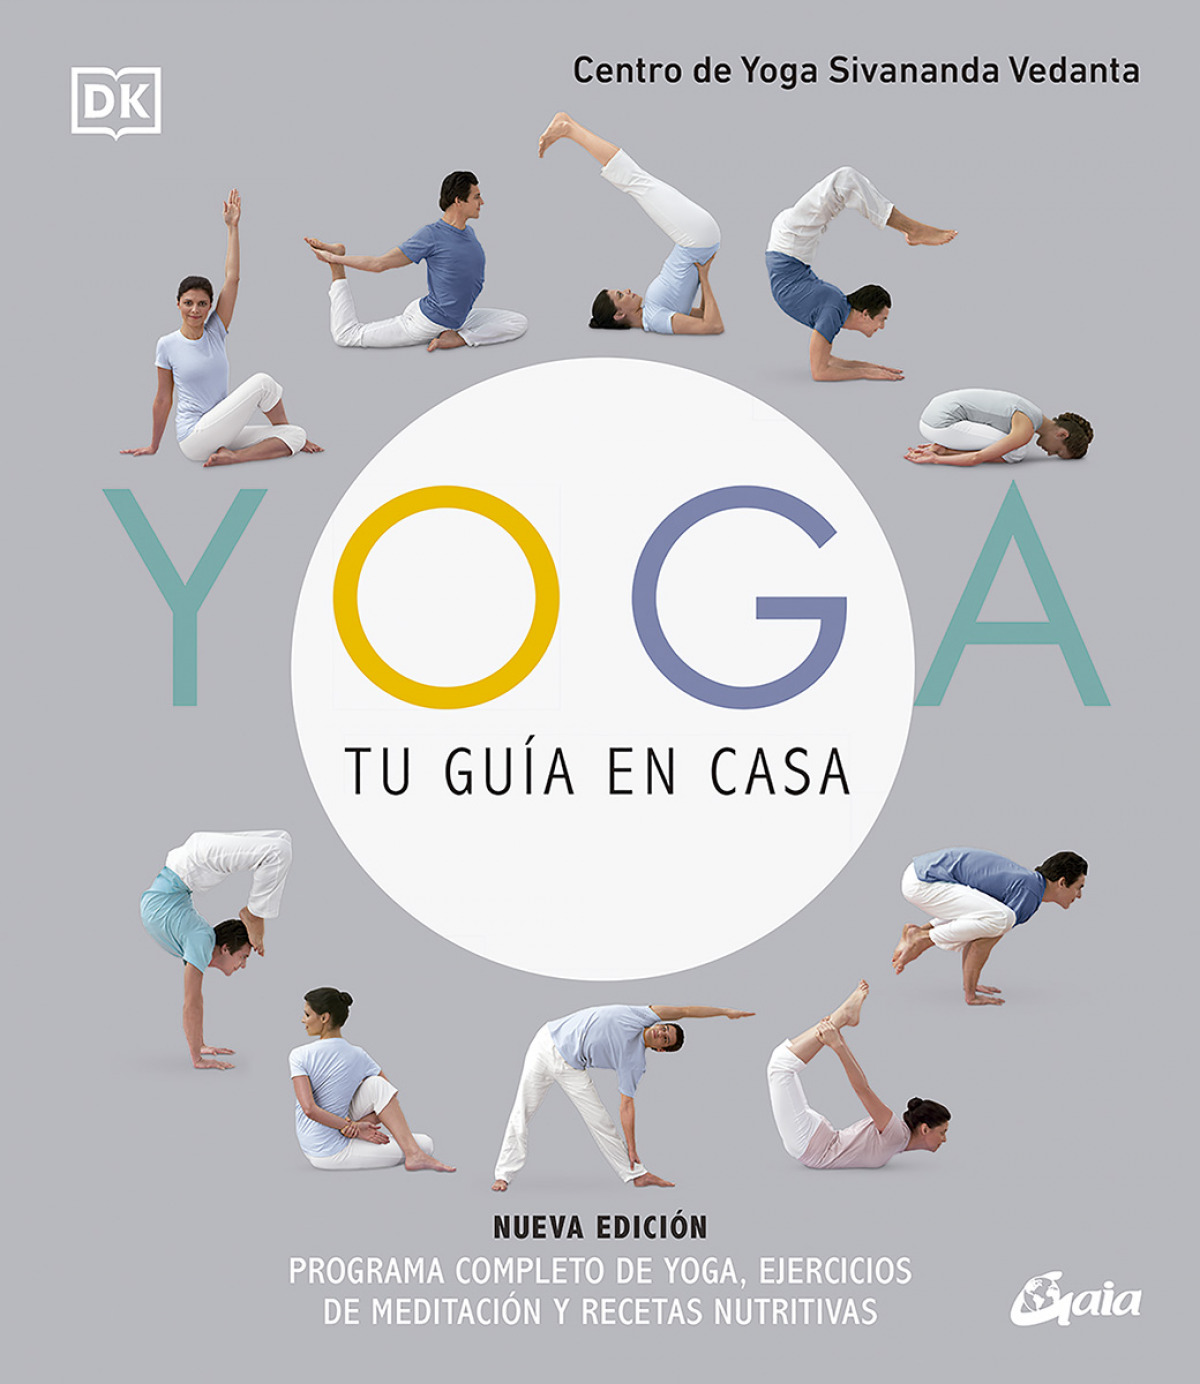 Yoga, tu guía en casa (nueva edición)